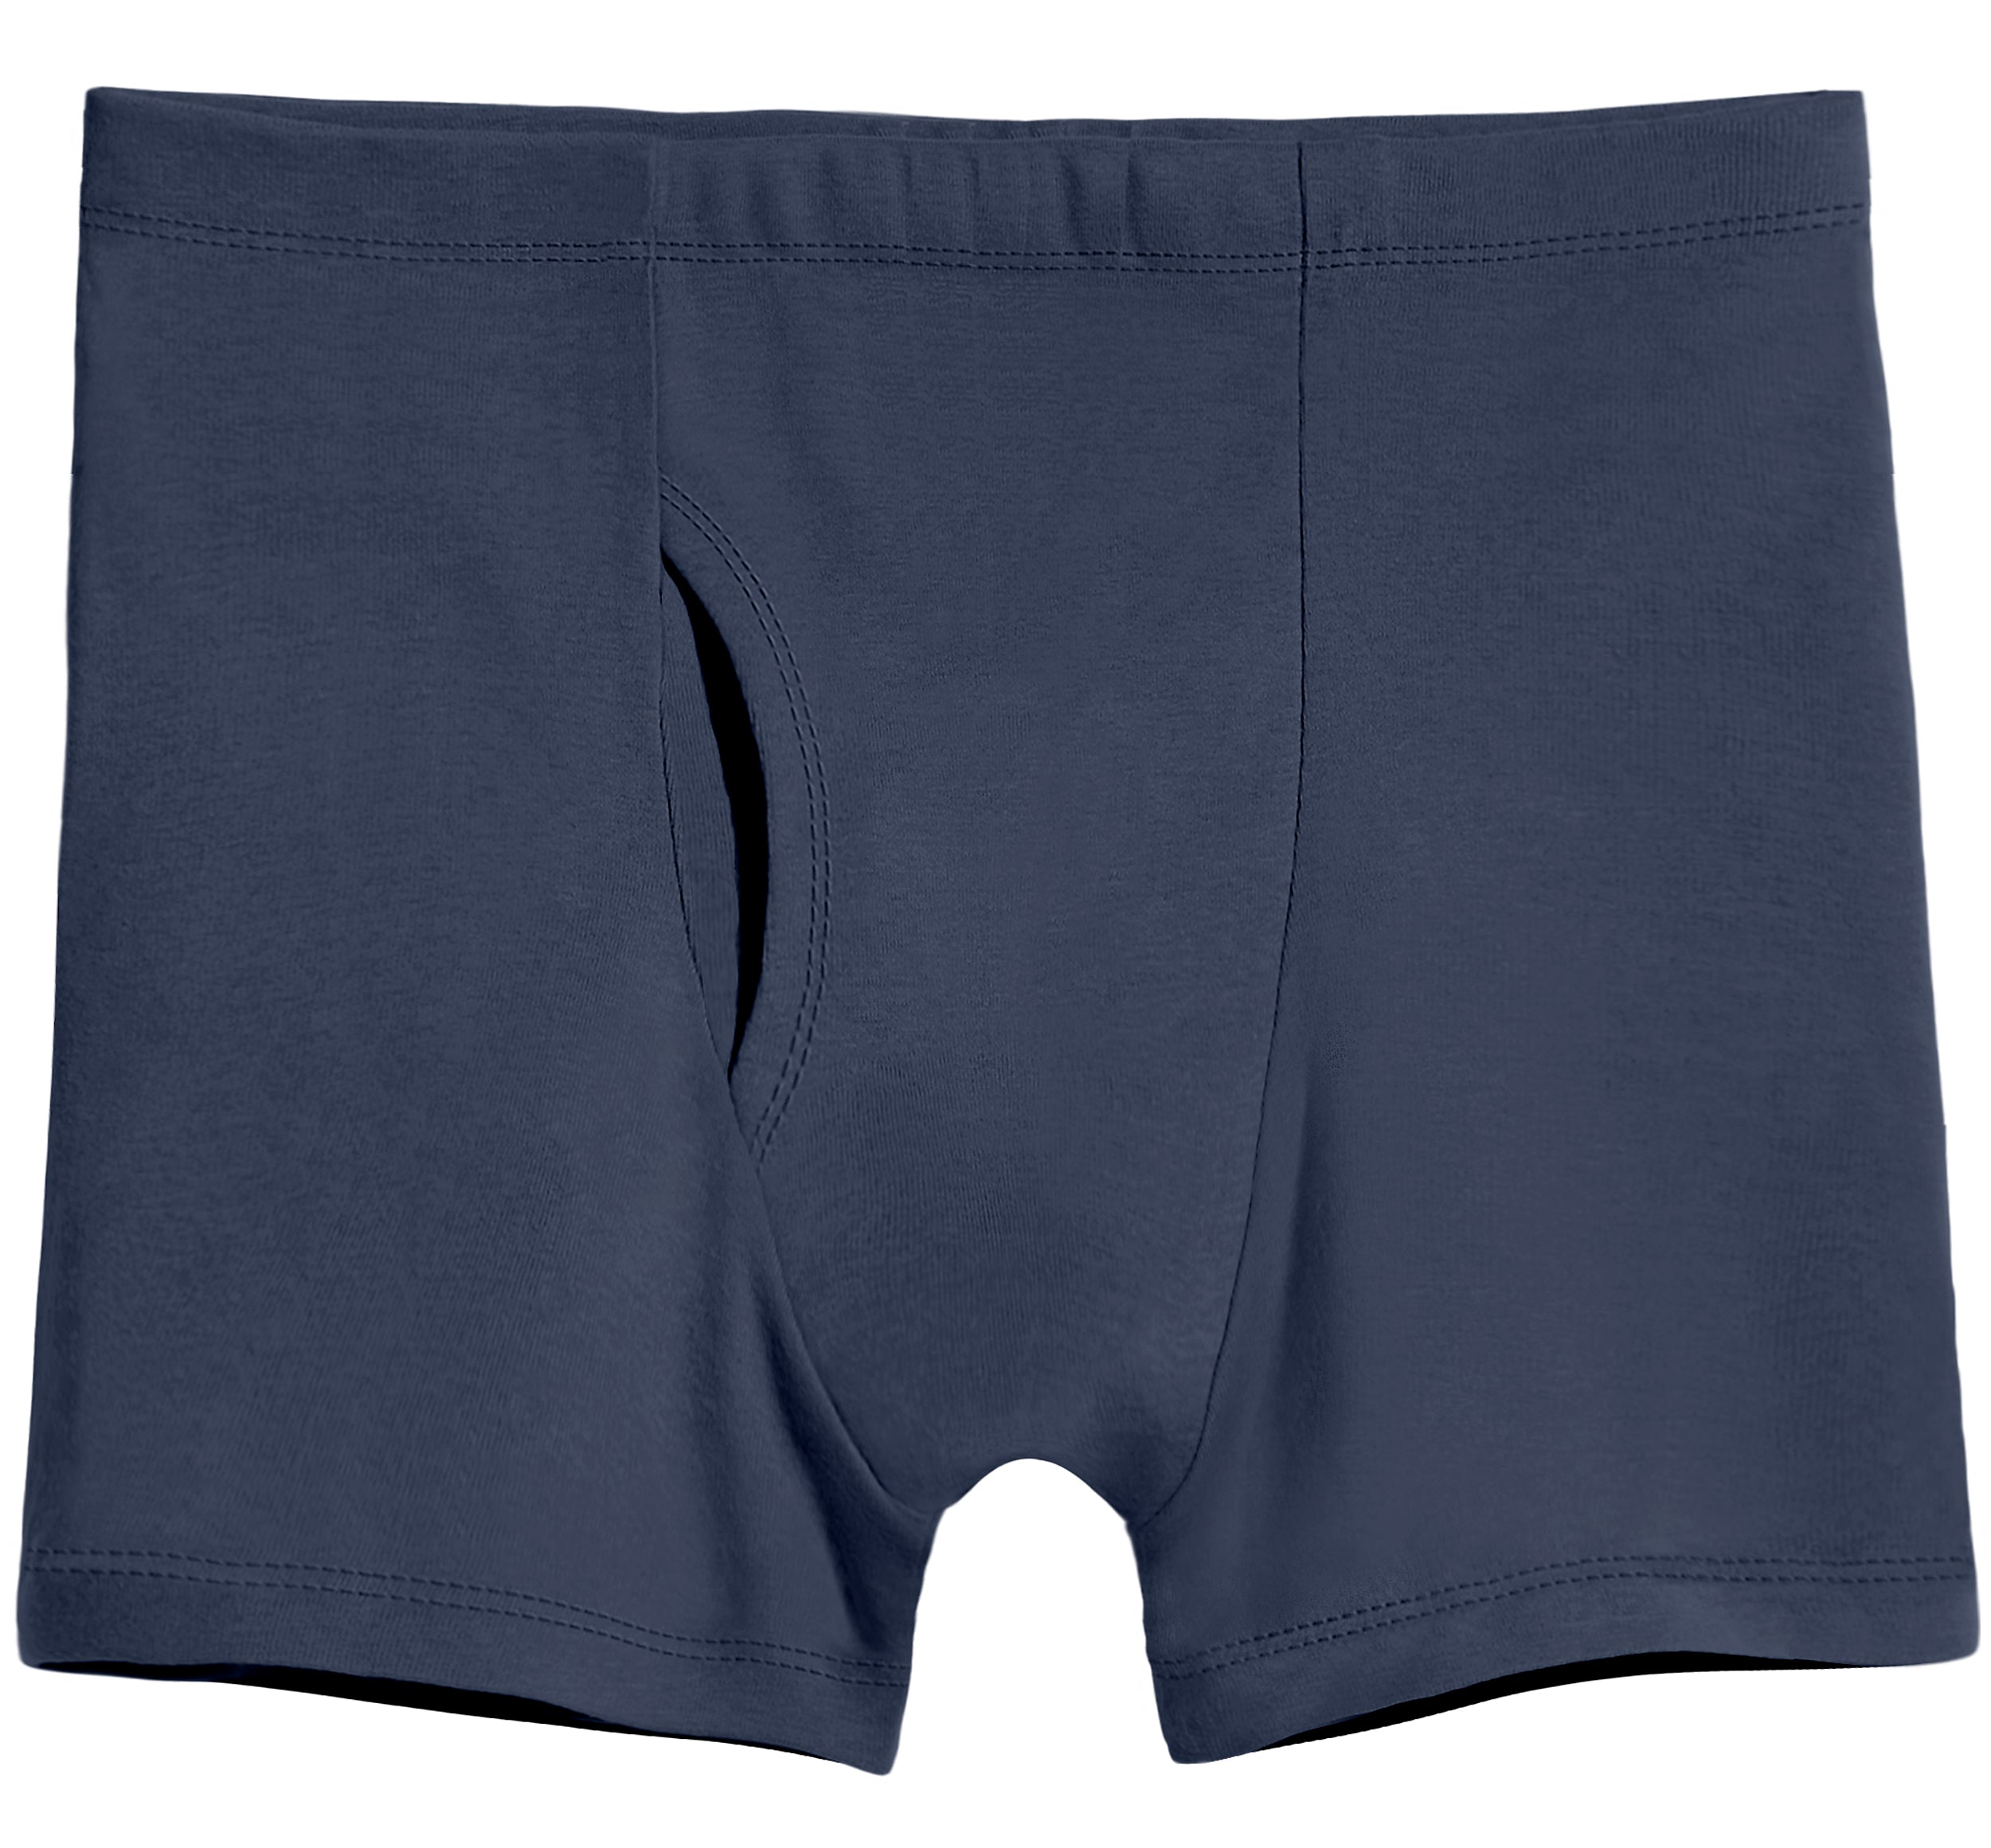 Special Underpants for men - Boxer Shorts - 100% Cotton